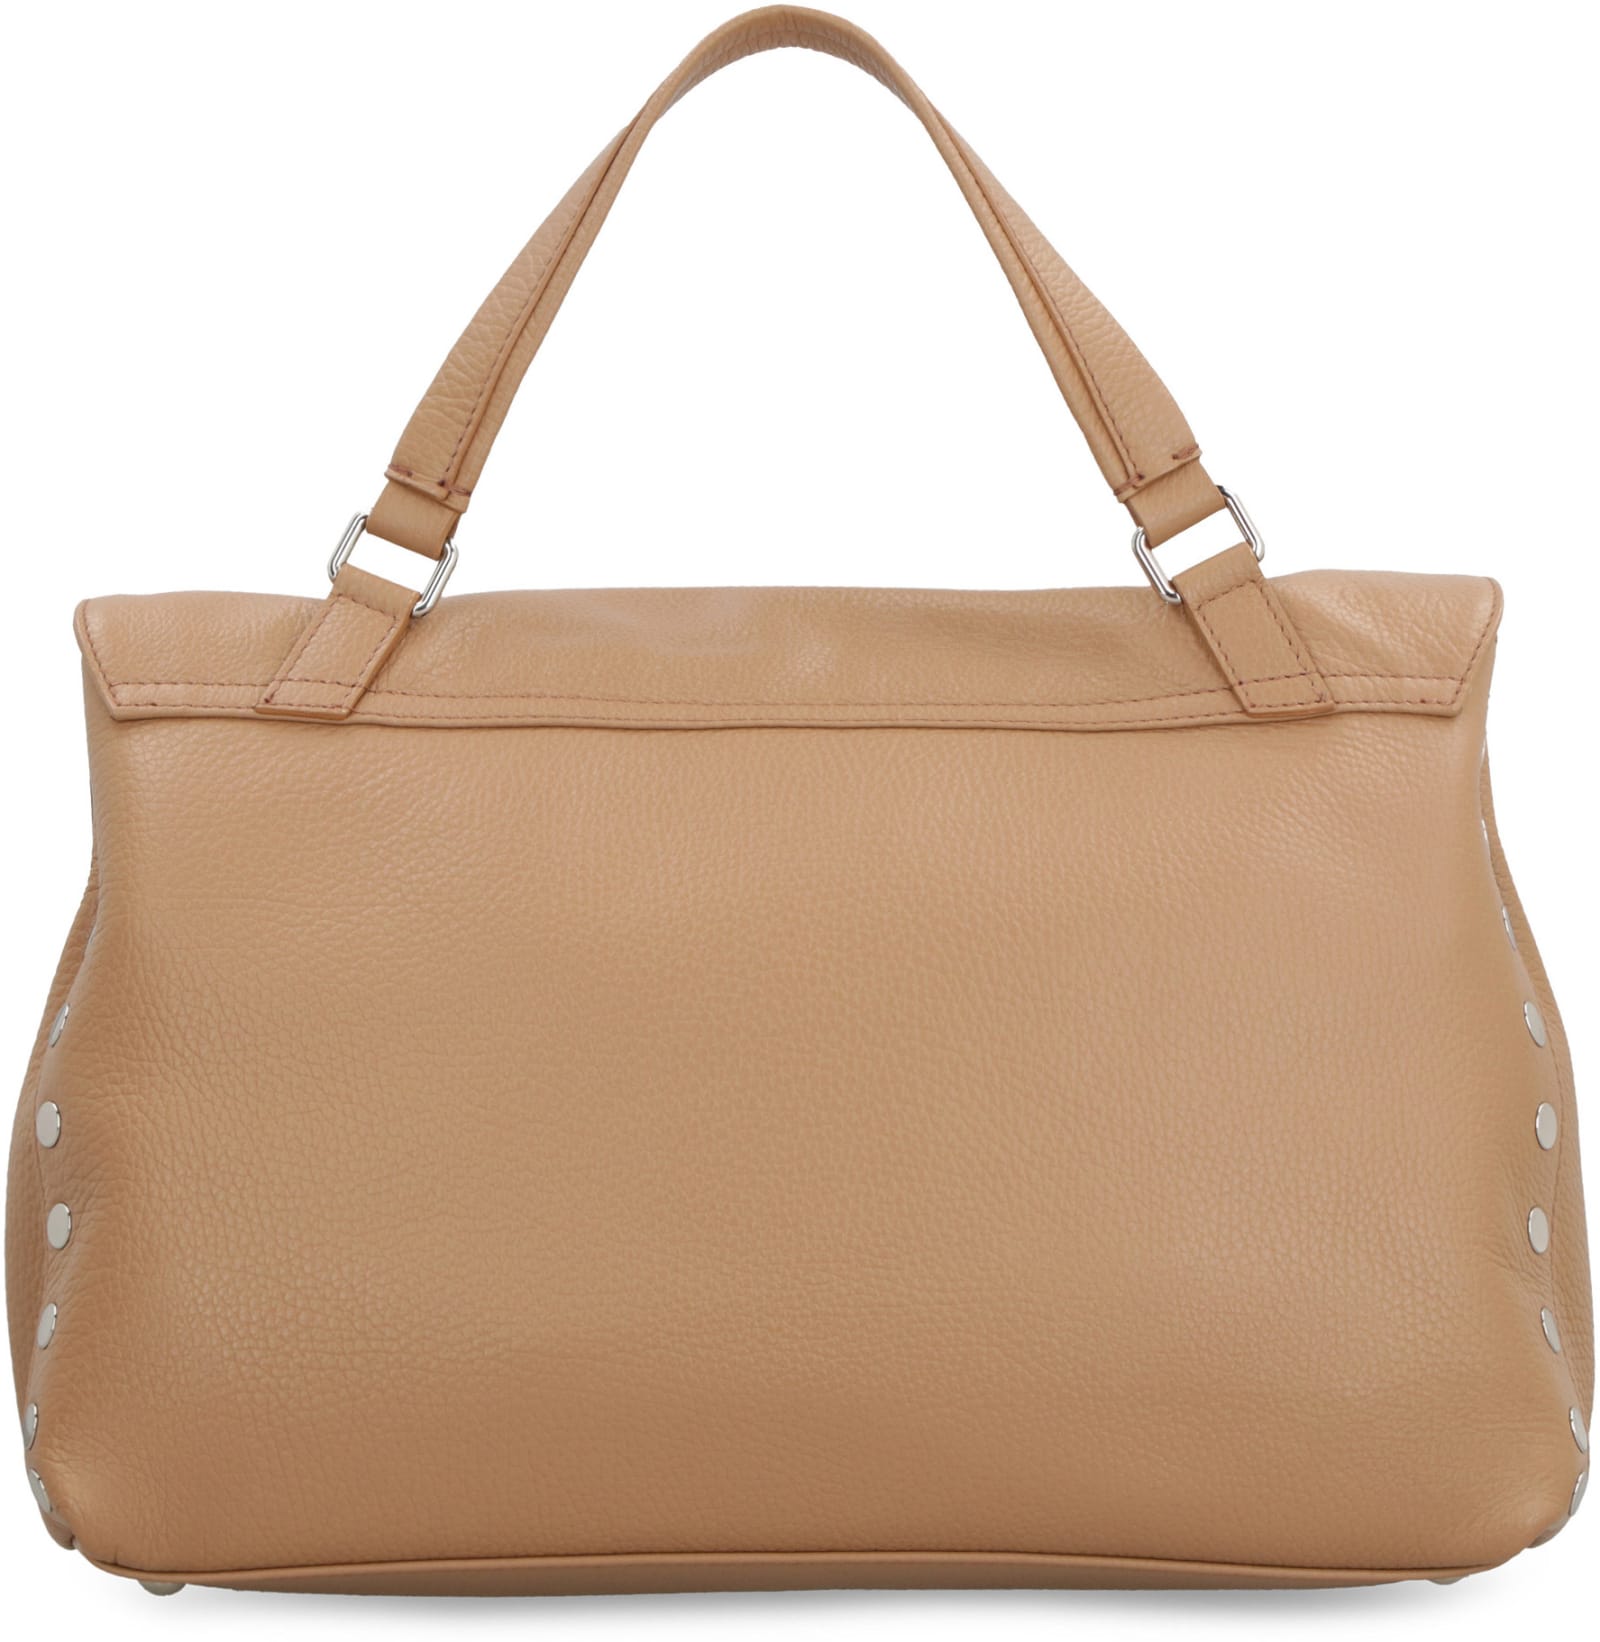 Zanellato small Postina leather tote bag - Brown